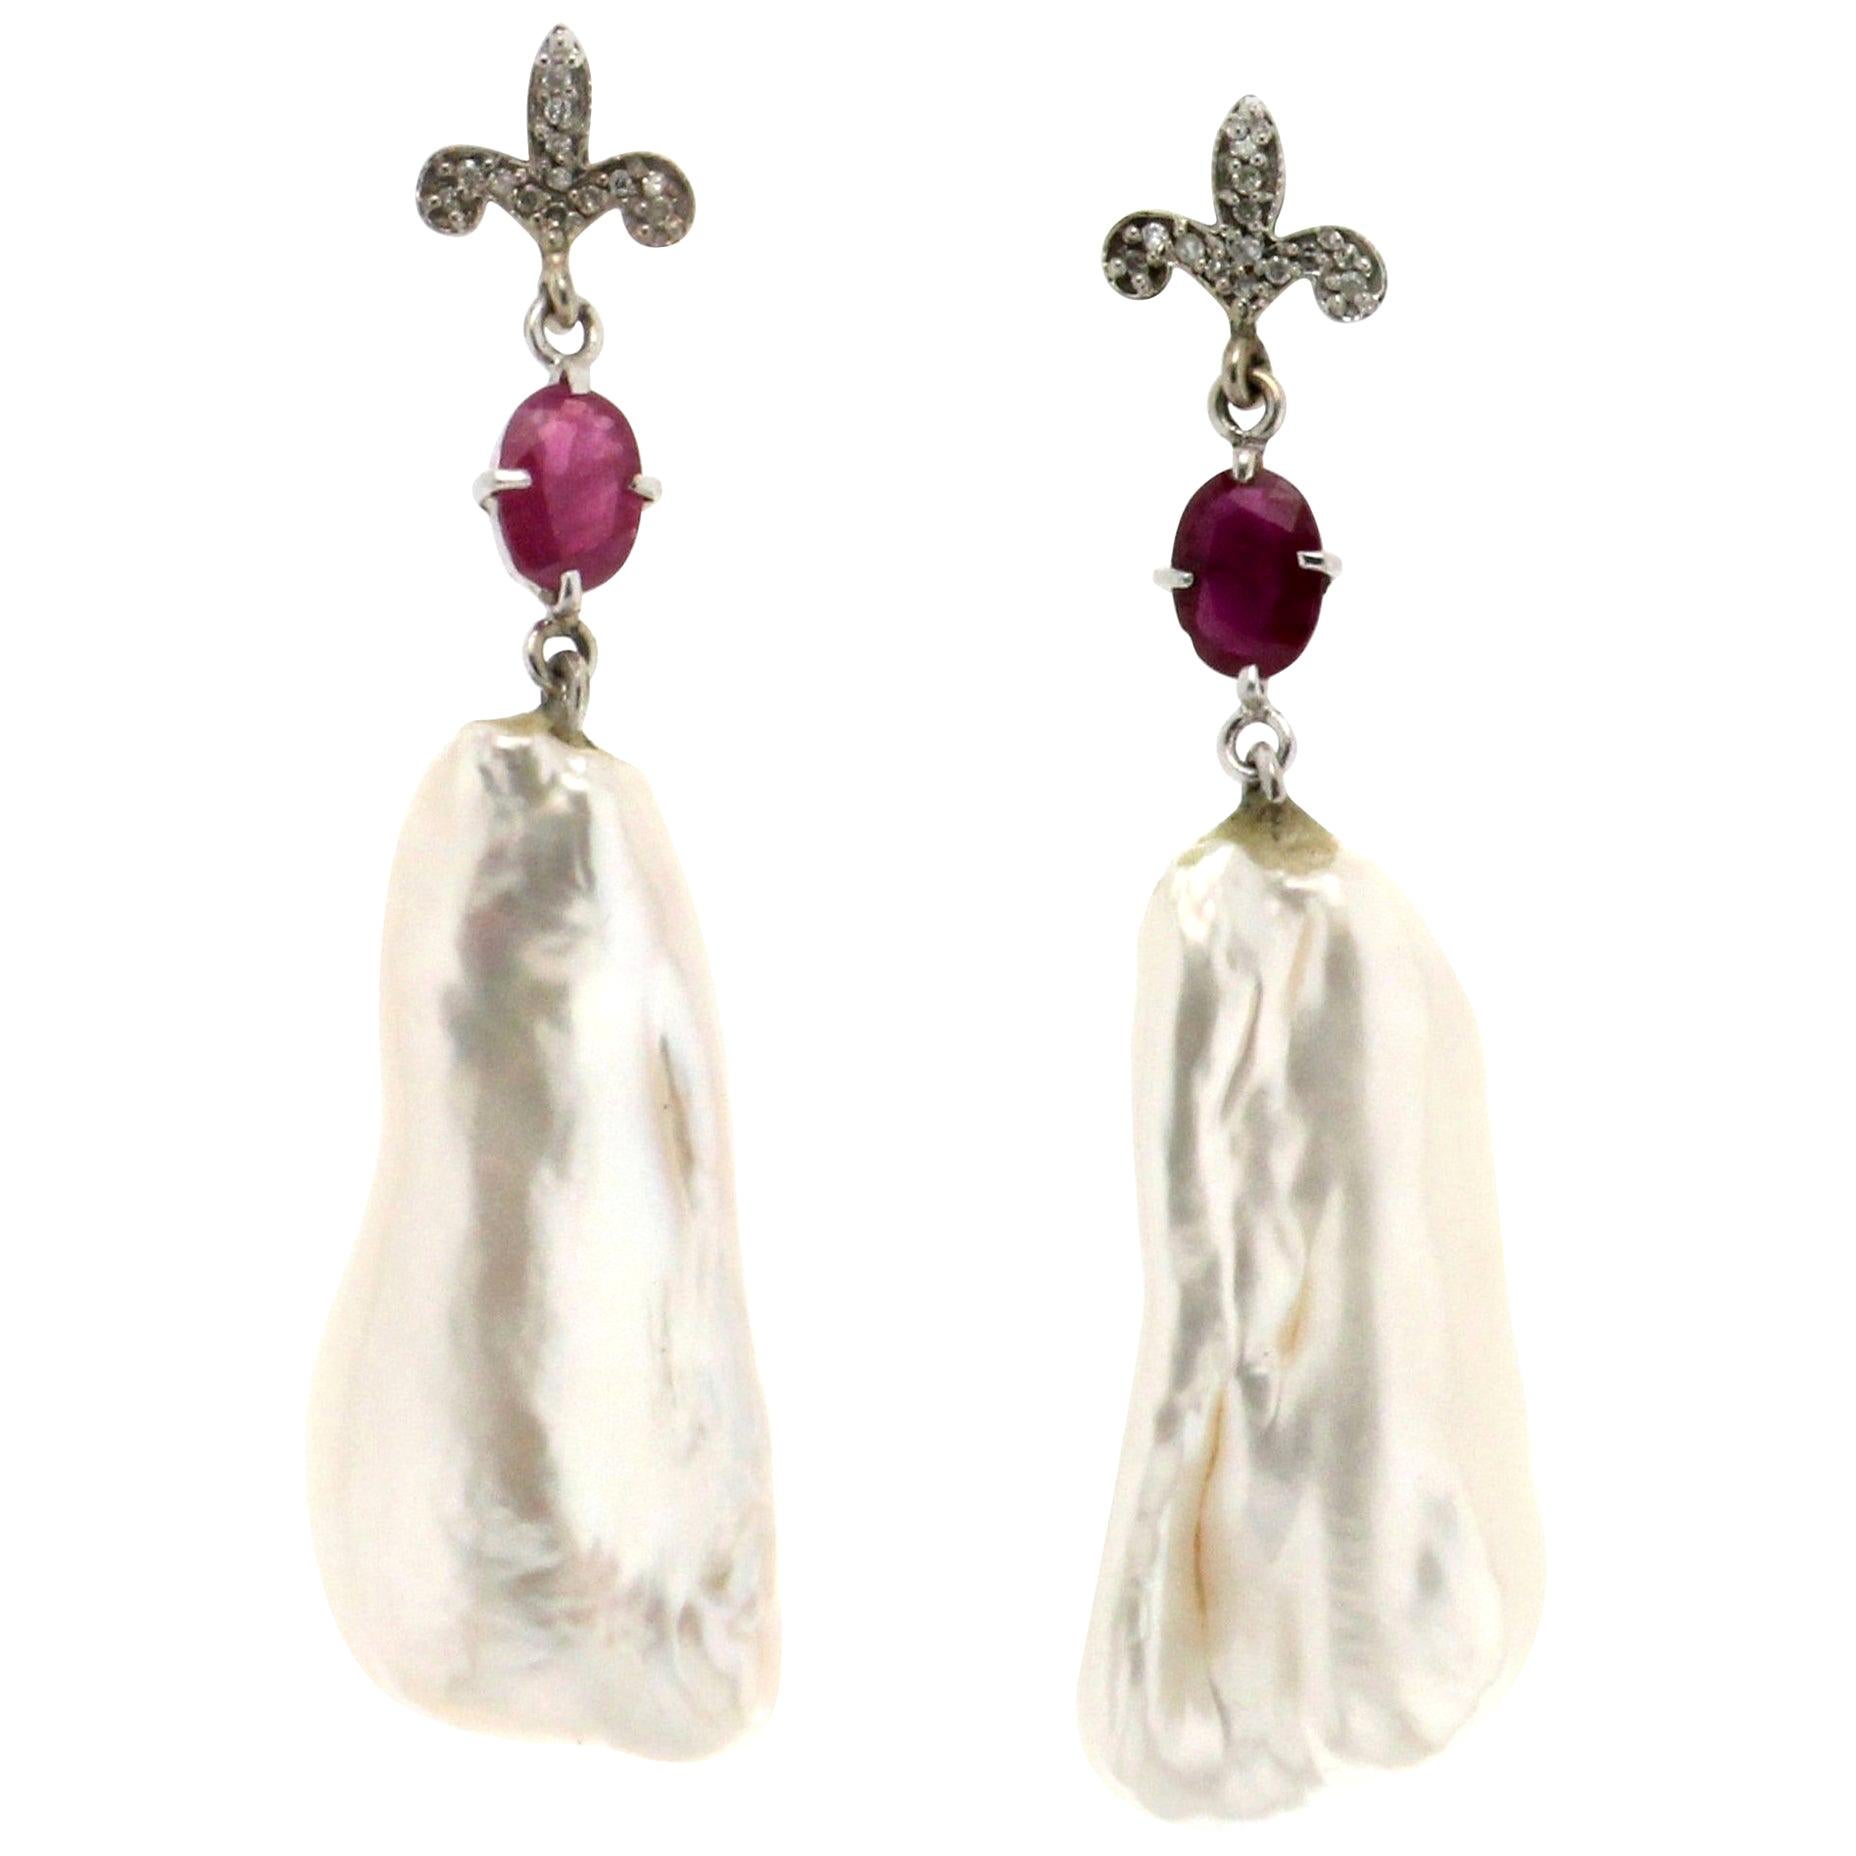 Pendants d'oreilles artisanaux en or blanc 18 carats avec perles baroques et diamants en rubis